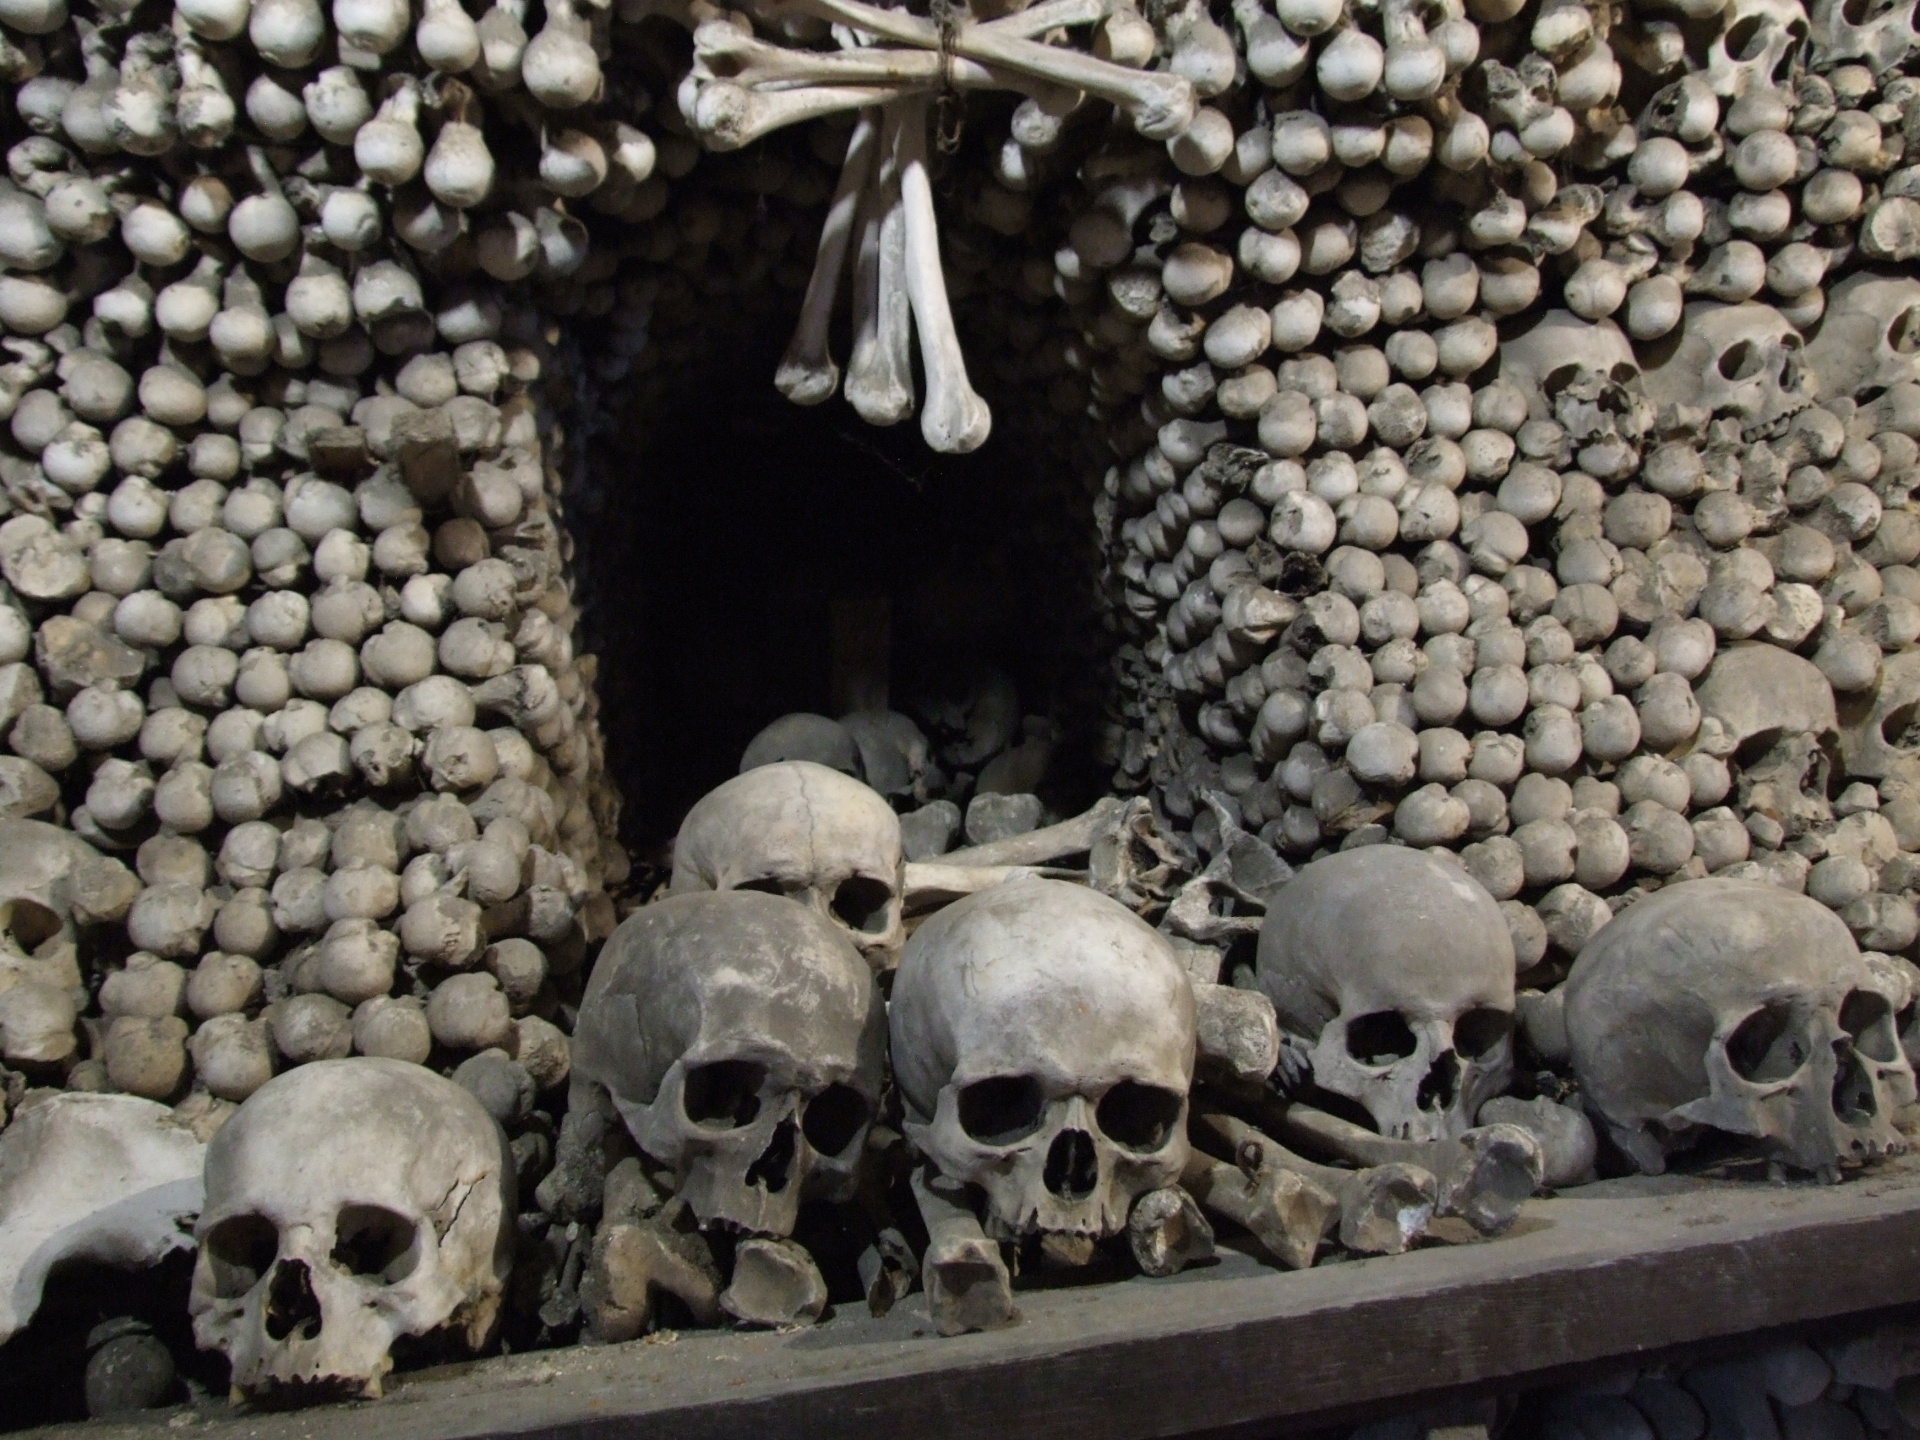 Pile Of Human Skulls And Bones